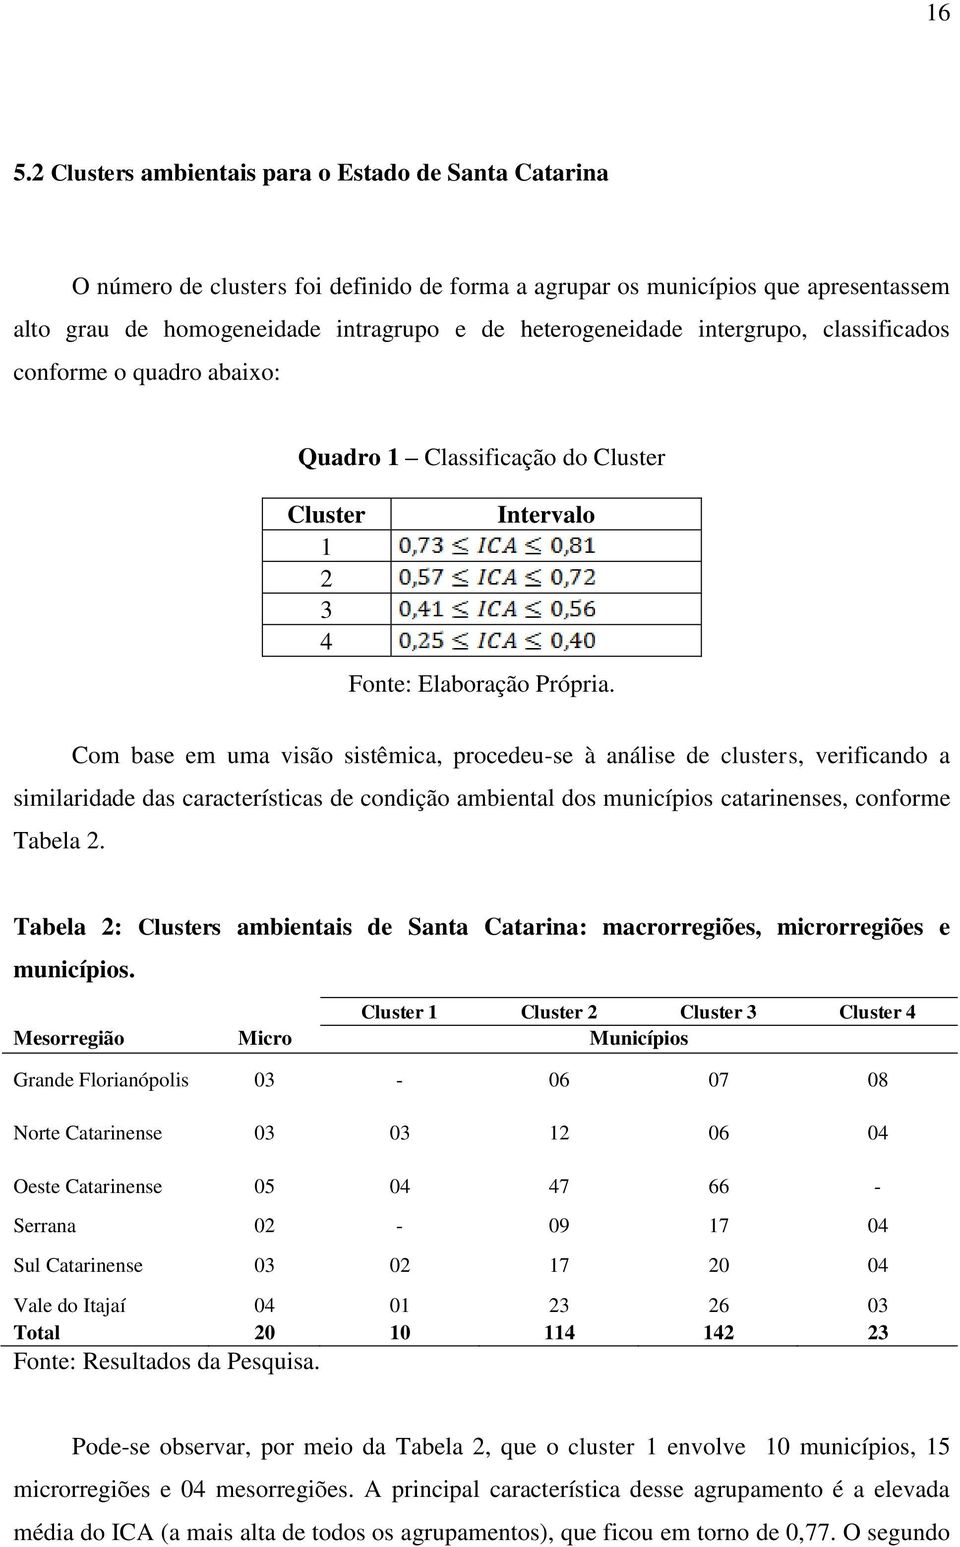 Com base em uma visão sistêmica, procedeu-se à análise de clusters, verificando a similaridade das características de condição ambiental dos municípios catarinenses, conforme Tabela 2.